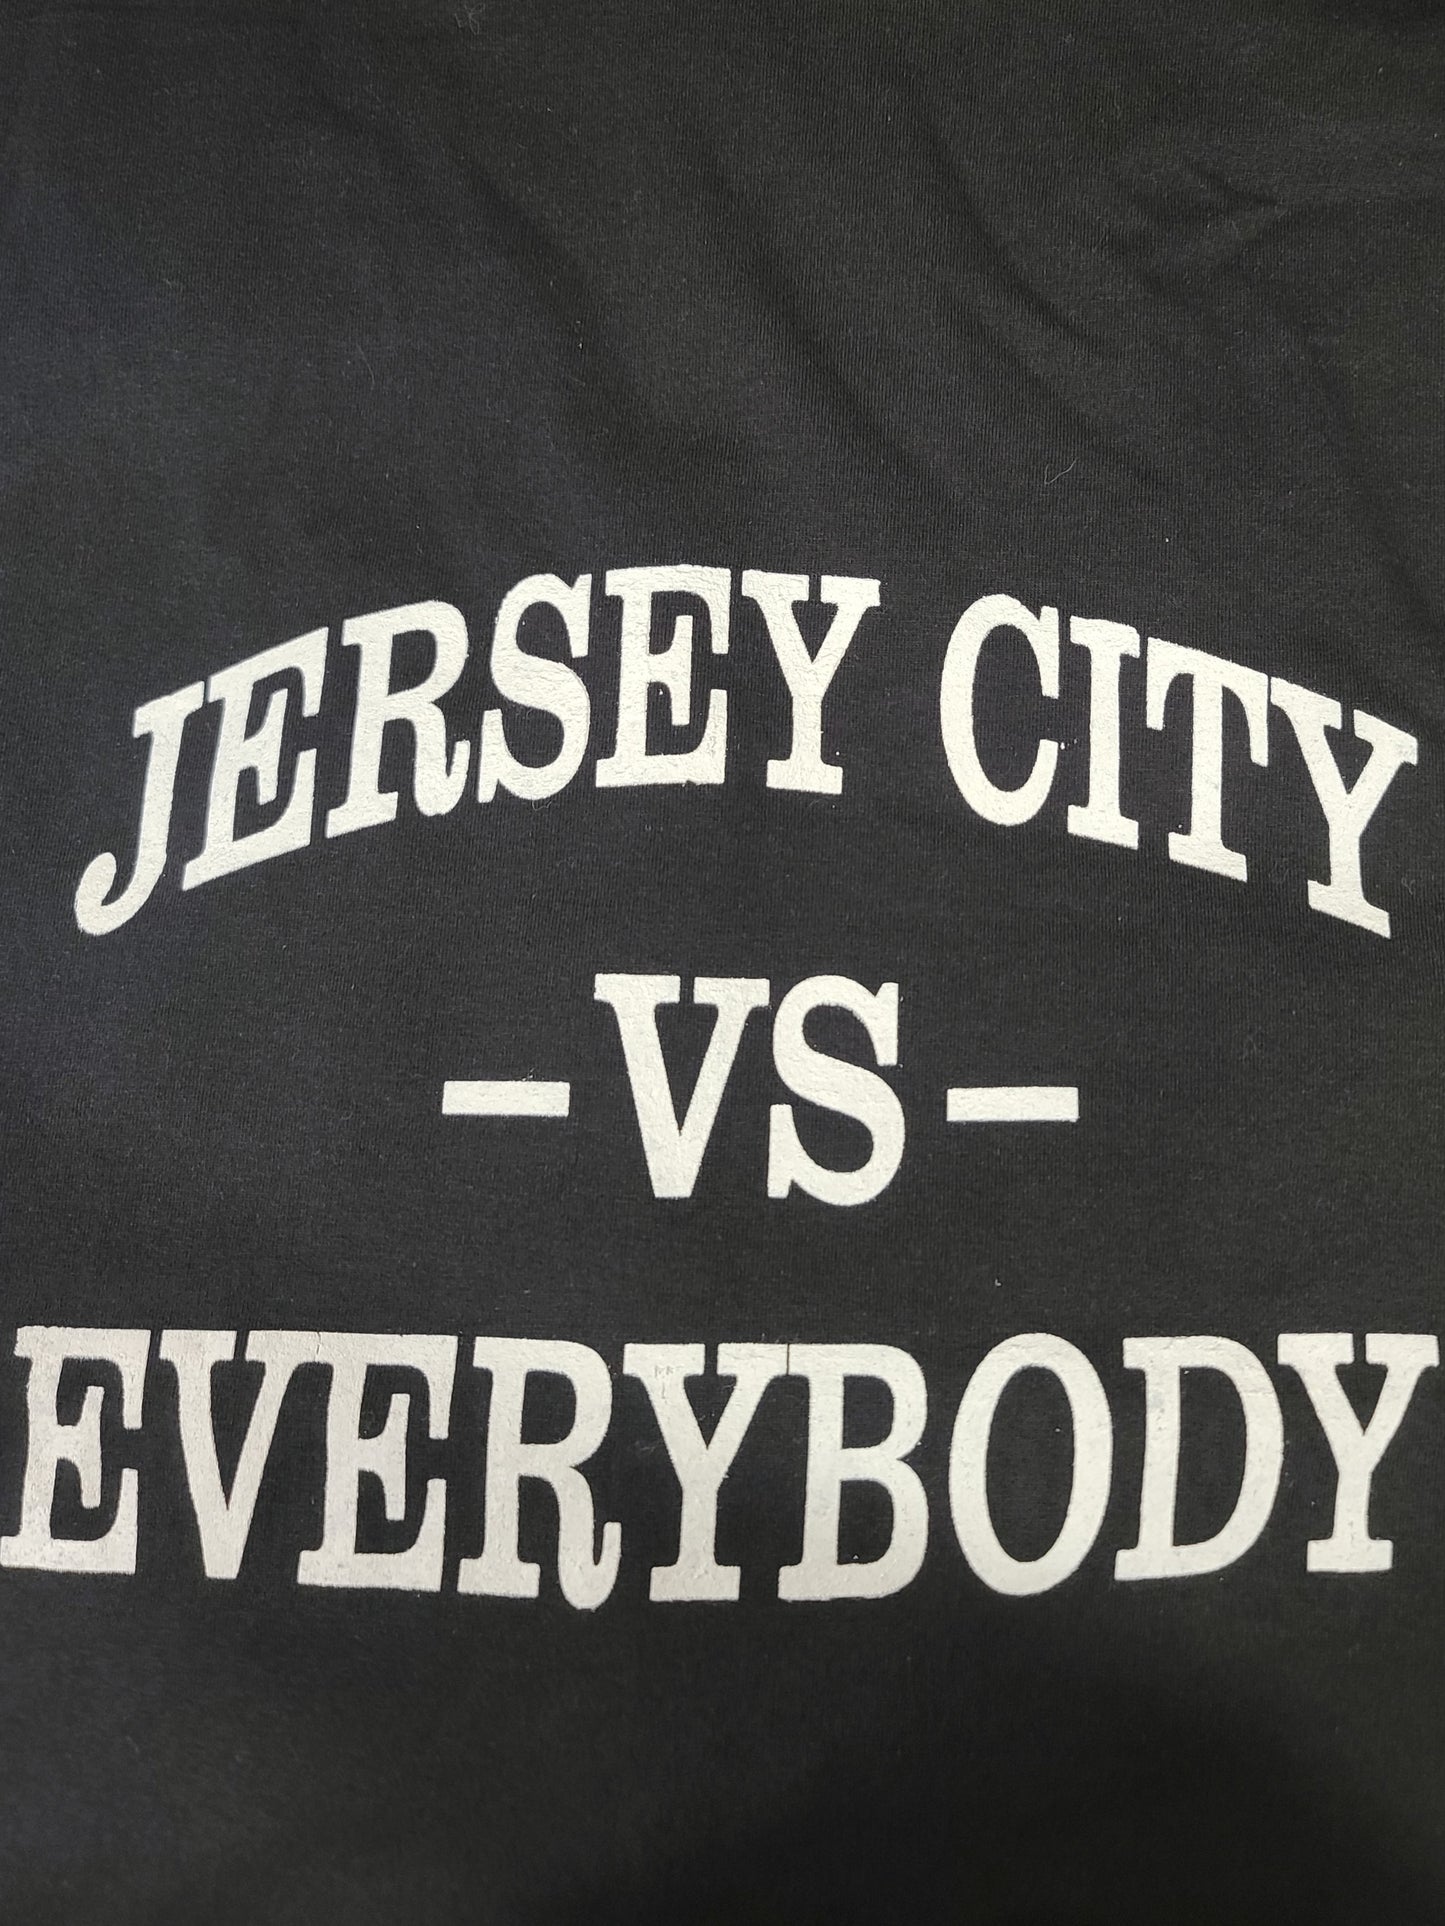 Jersey City Vs Everybody